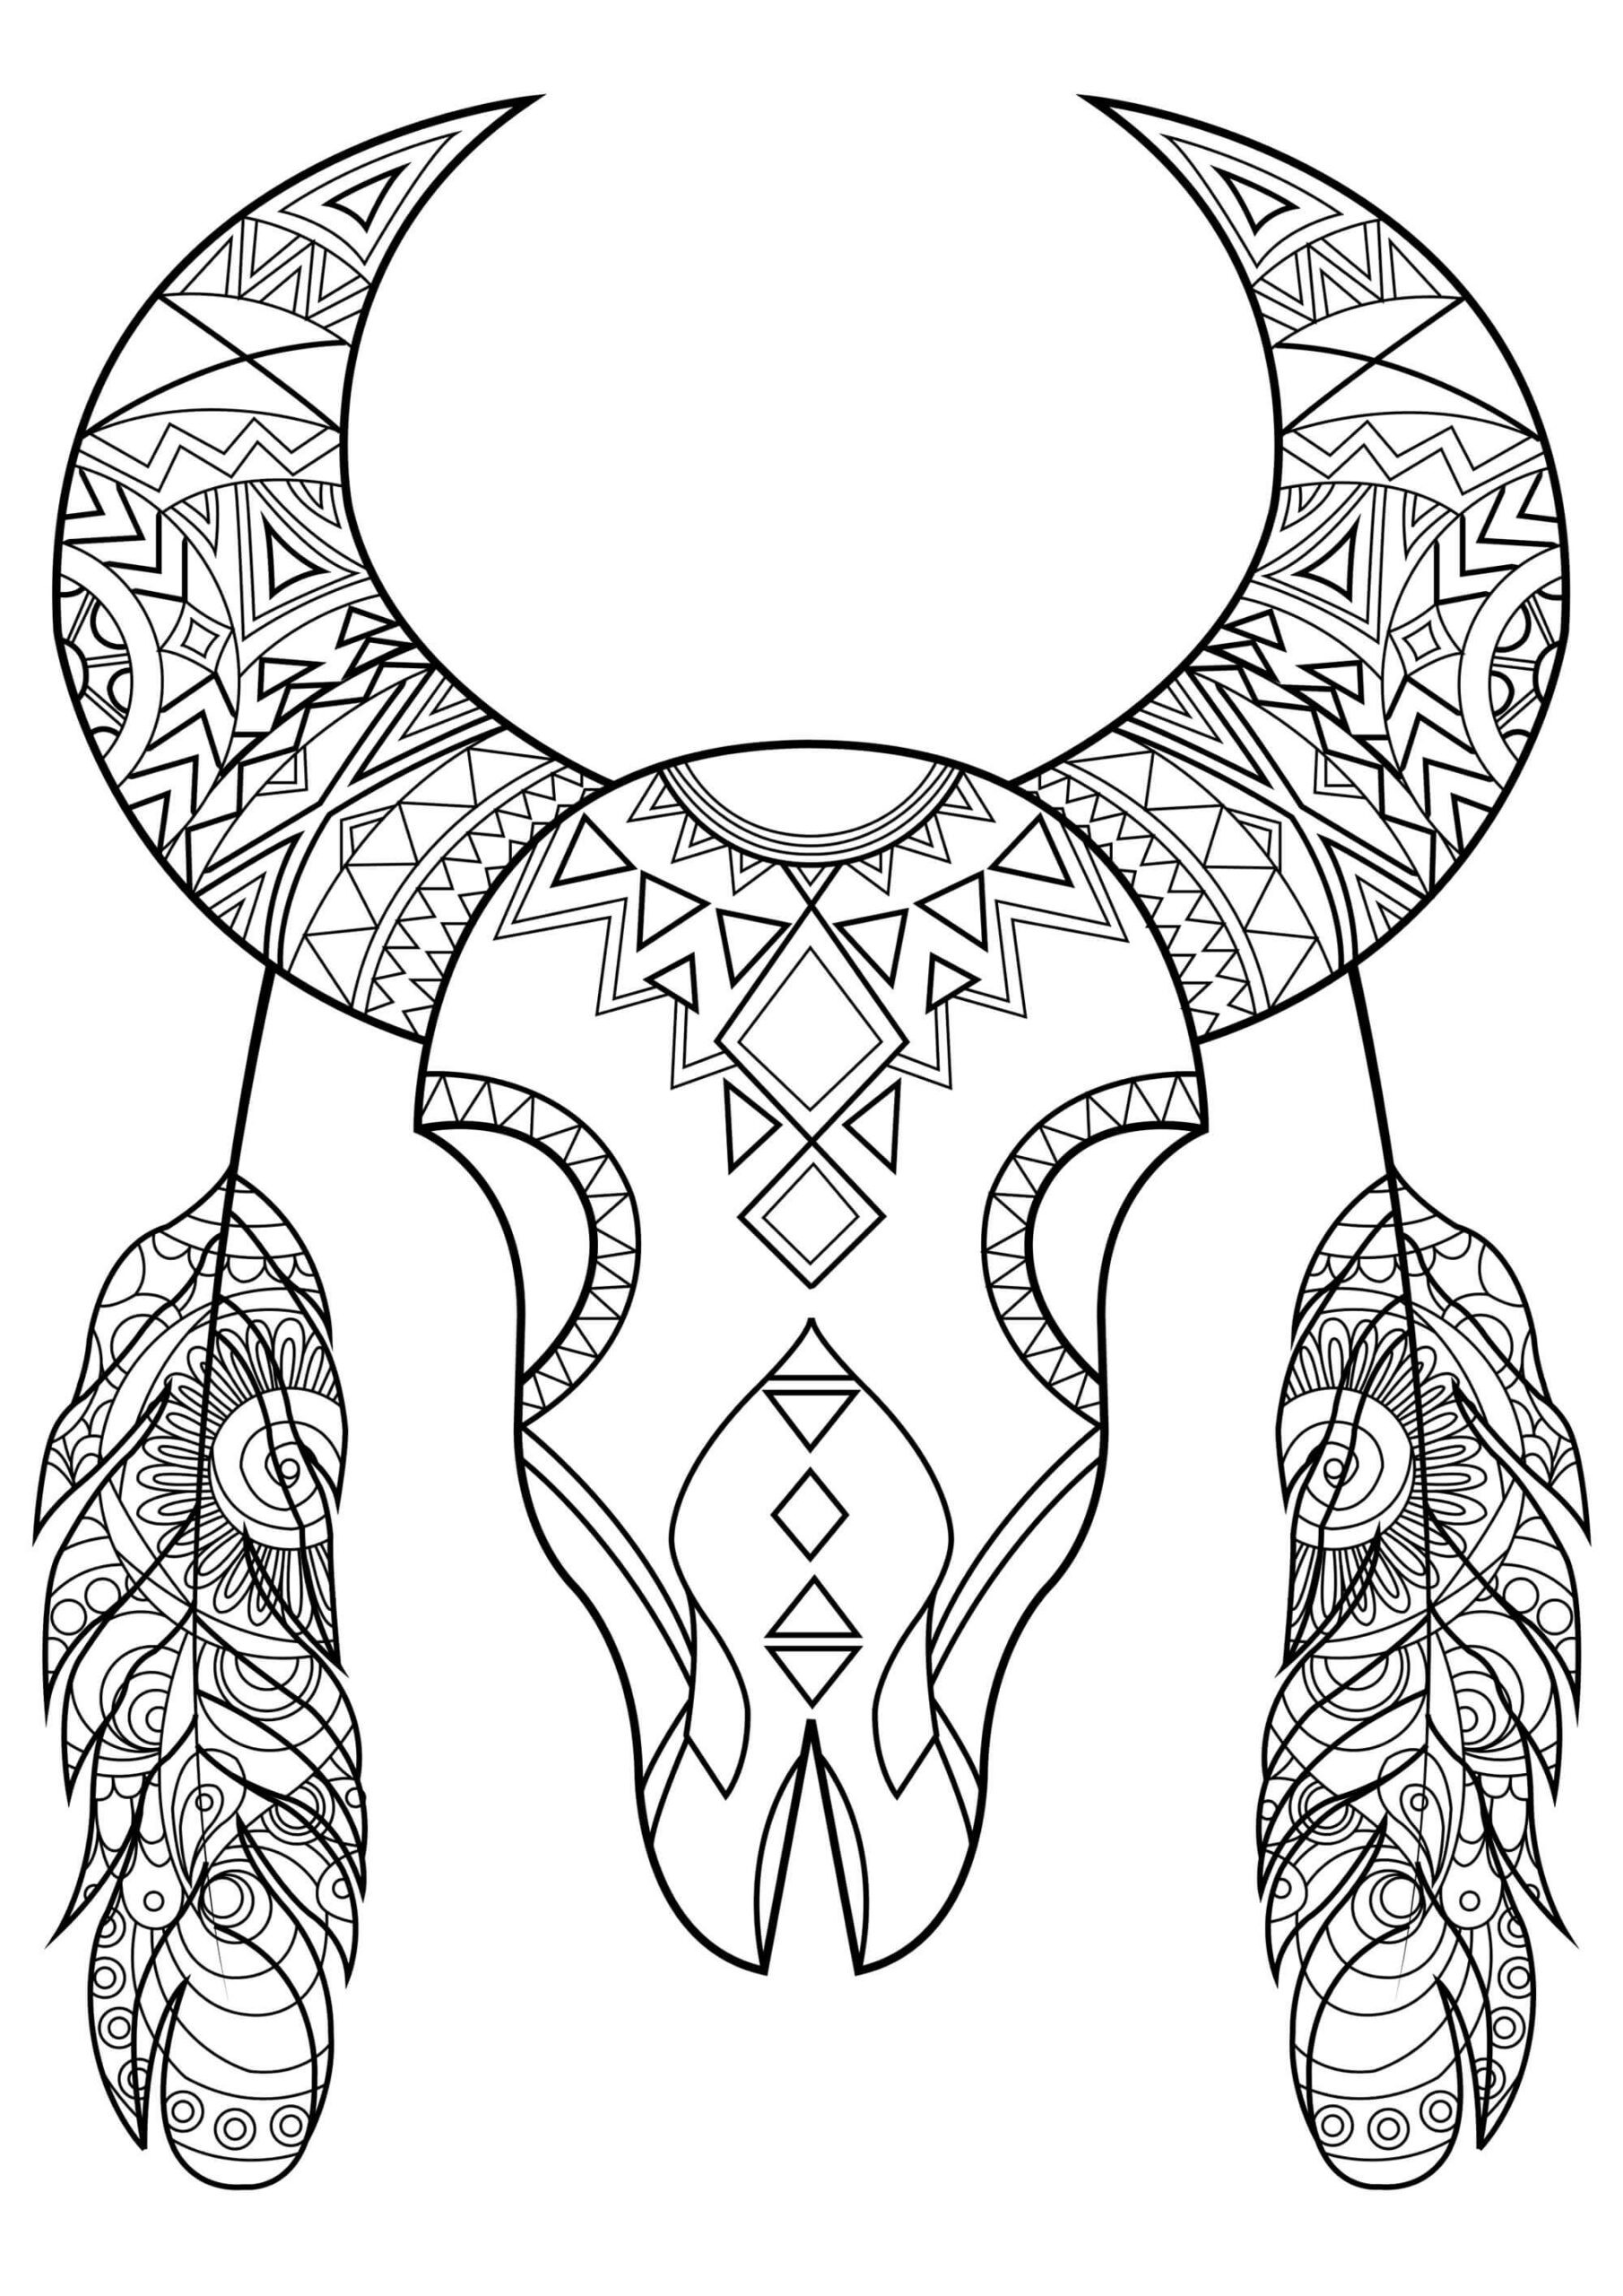 Mandala Bull Skull Coloring Page Mandalas